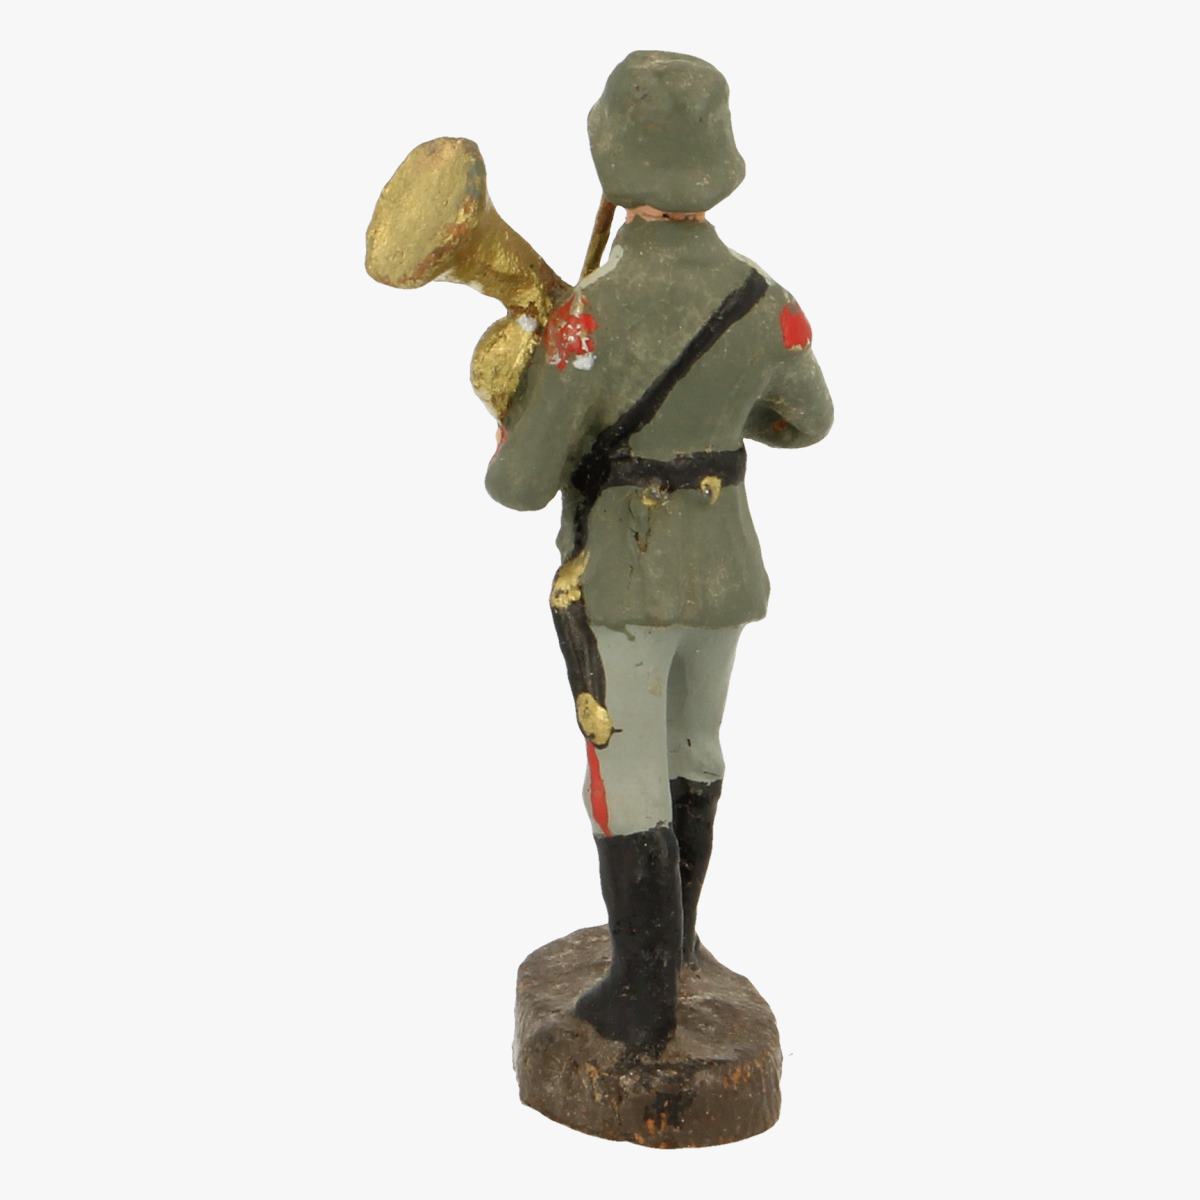 Afbeeldingen van elastolin soldaatje Germany